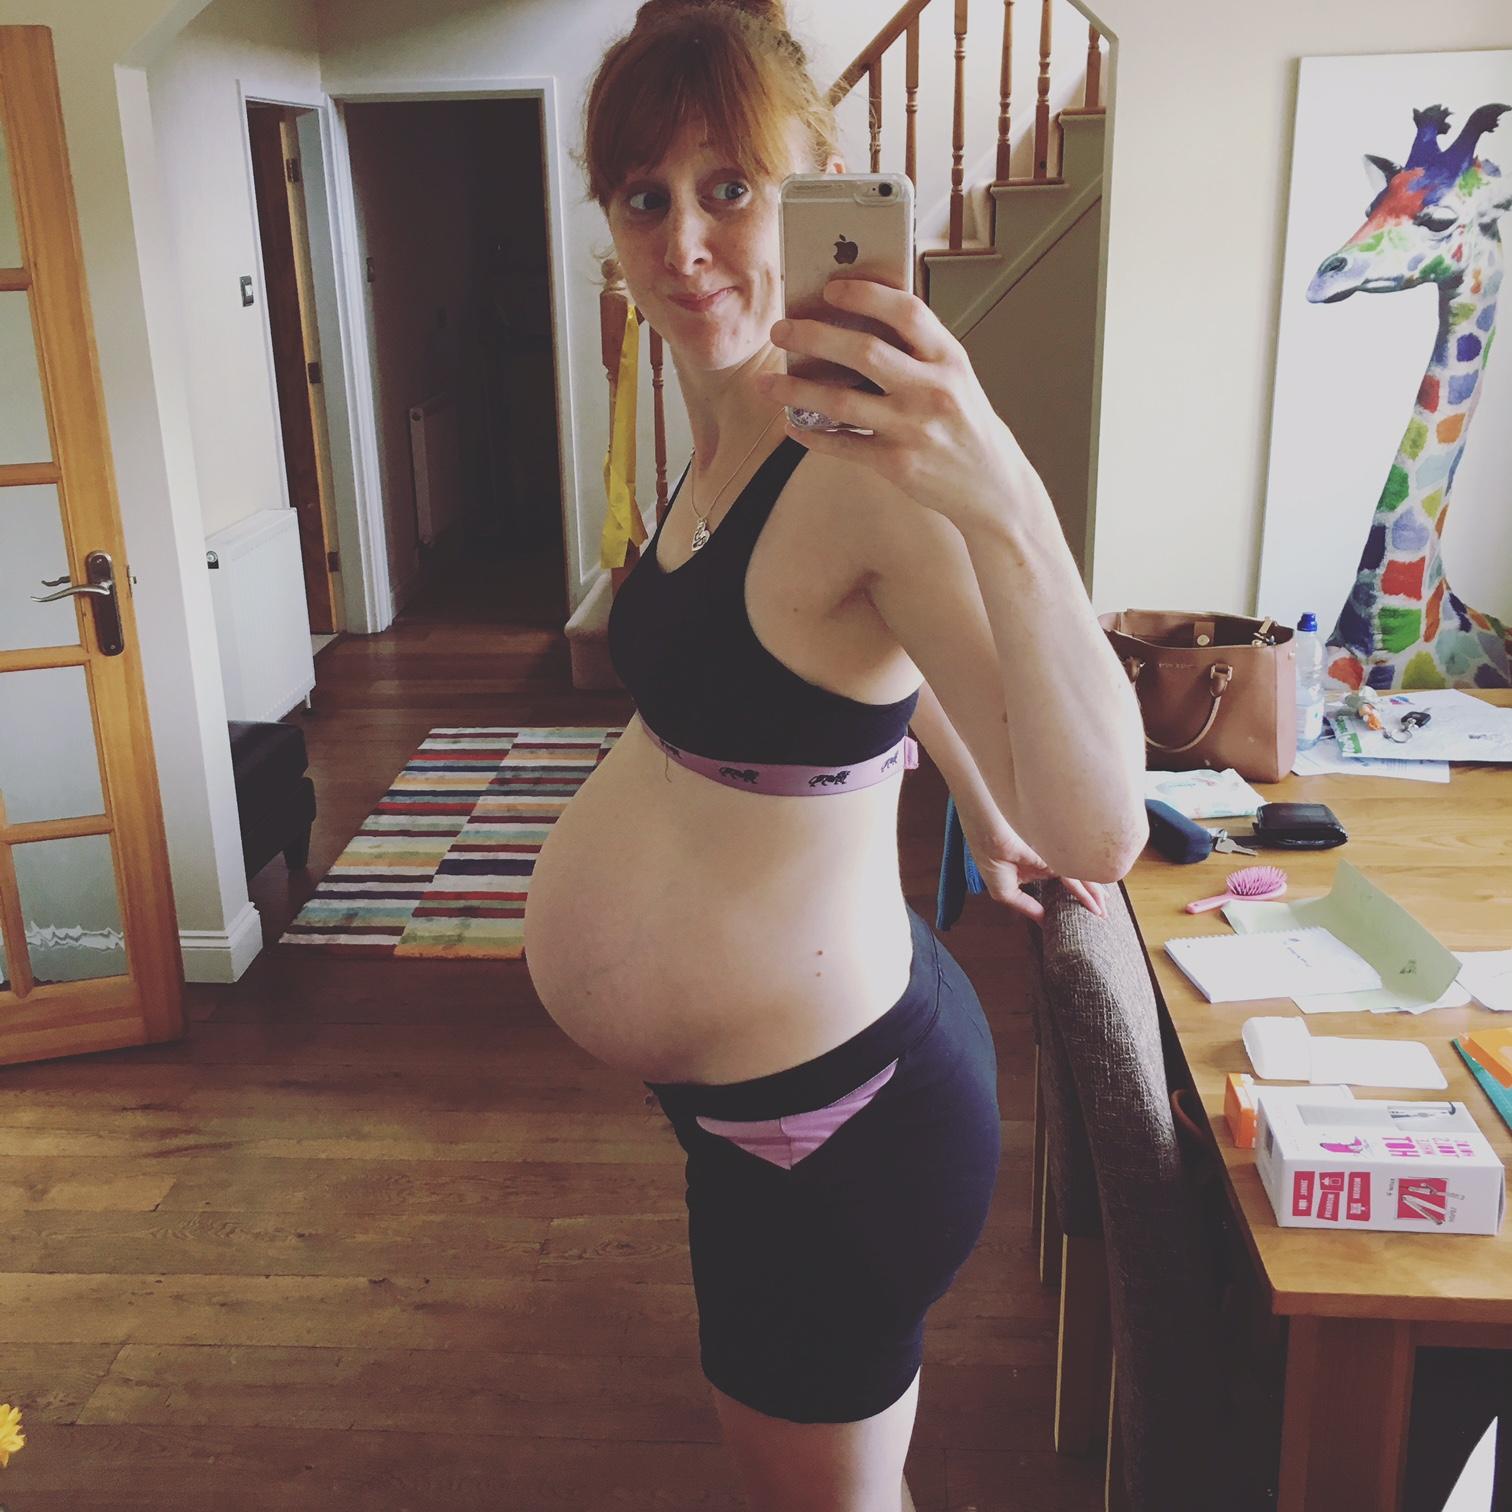 bump at 40 weeks pregnant